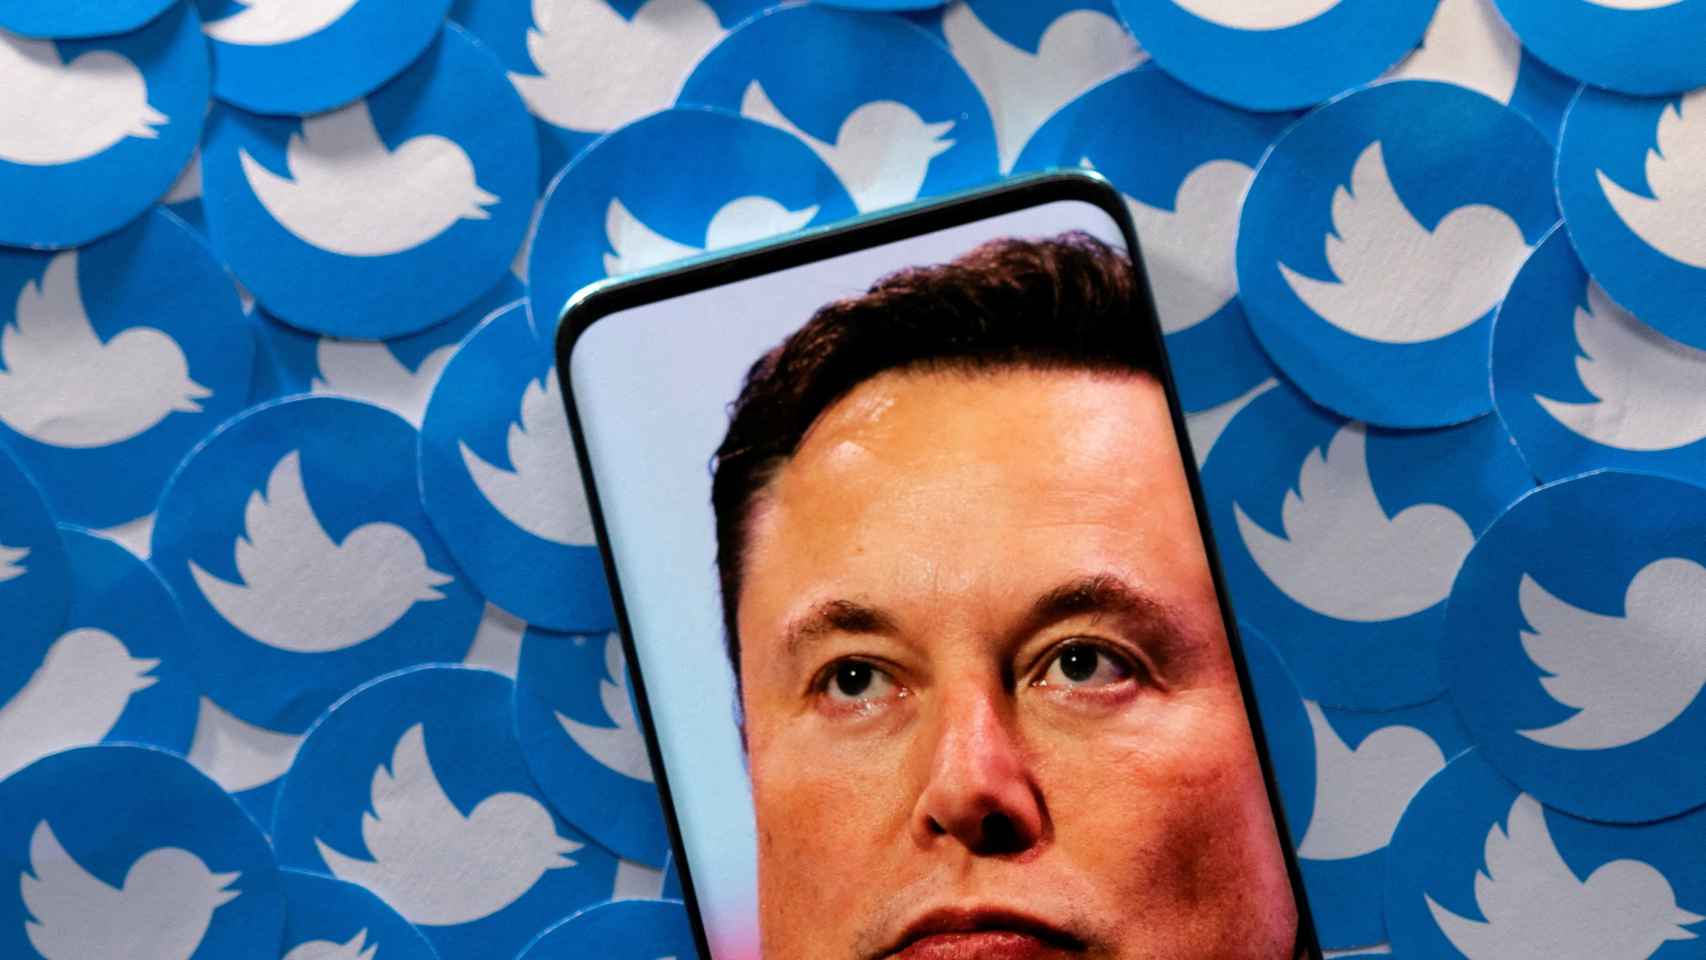 Montaje con la imagen de Elon Musk sobre el logo de Twitter.